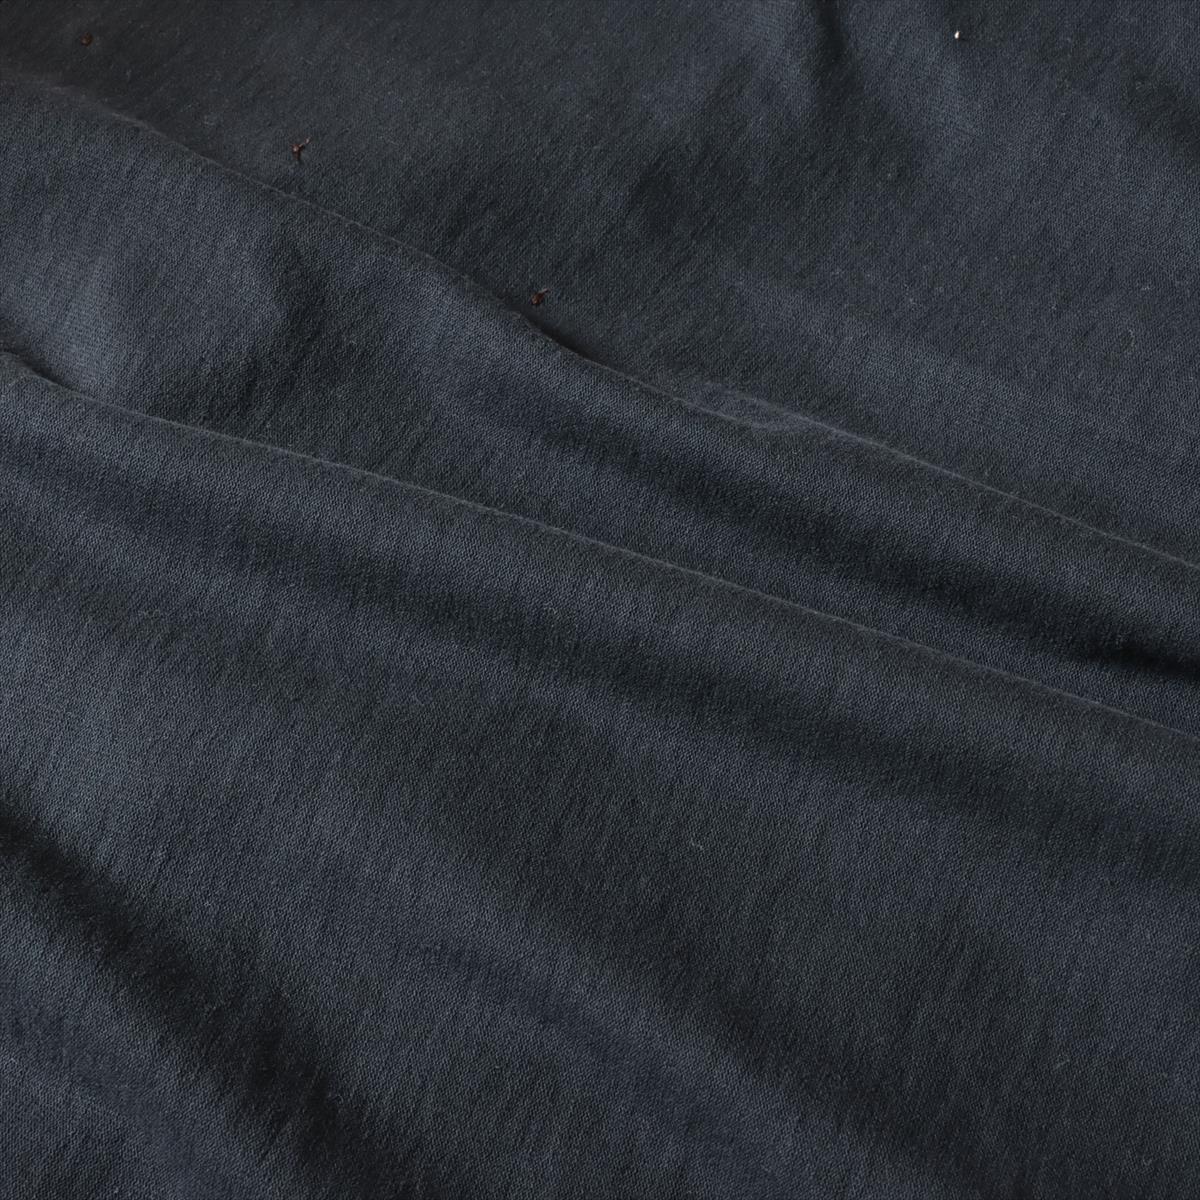 ルイヴィトン  RM202Q コットン Tシャツ L メンズ ブラック  STAPLE EDITION インサイドアウト